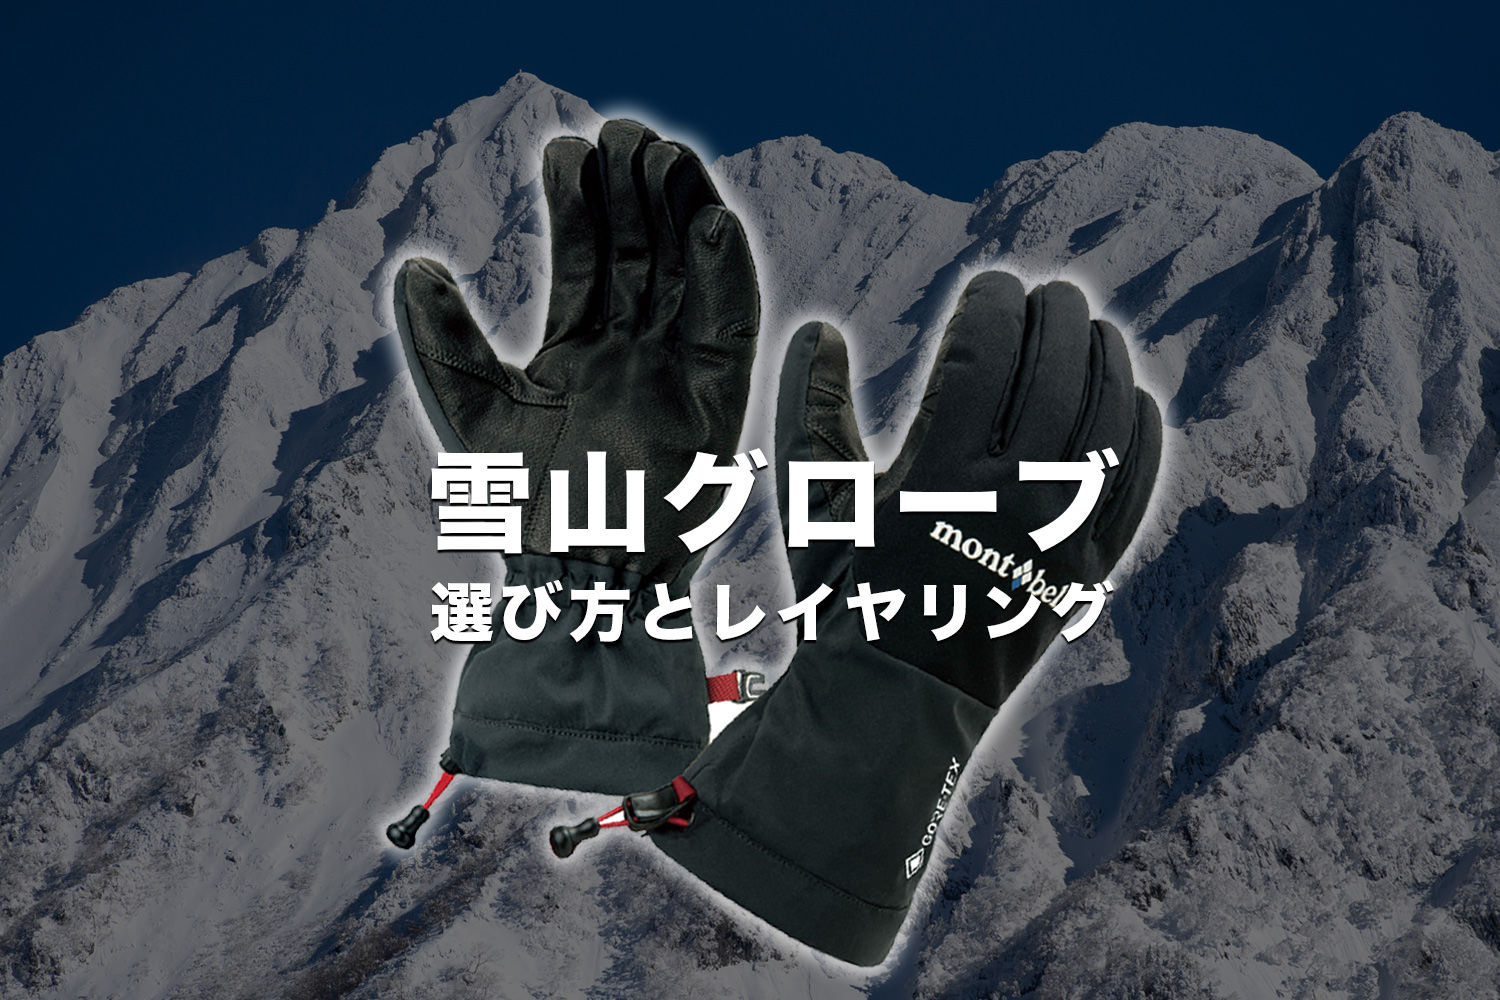 雪山登山で使うグローブの選び方・レイヤリングの考え方 - Japan Nomad 